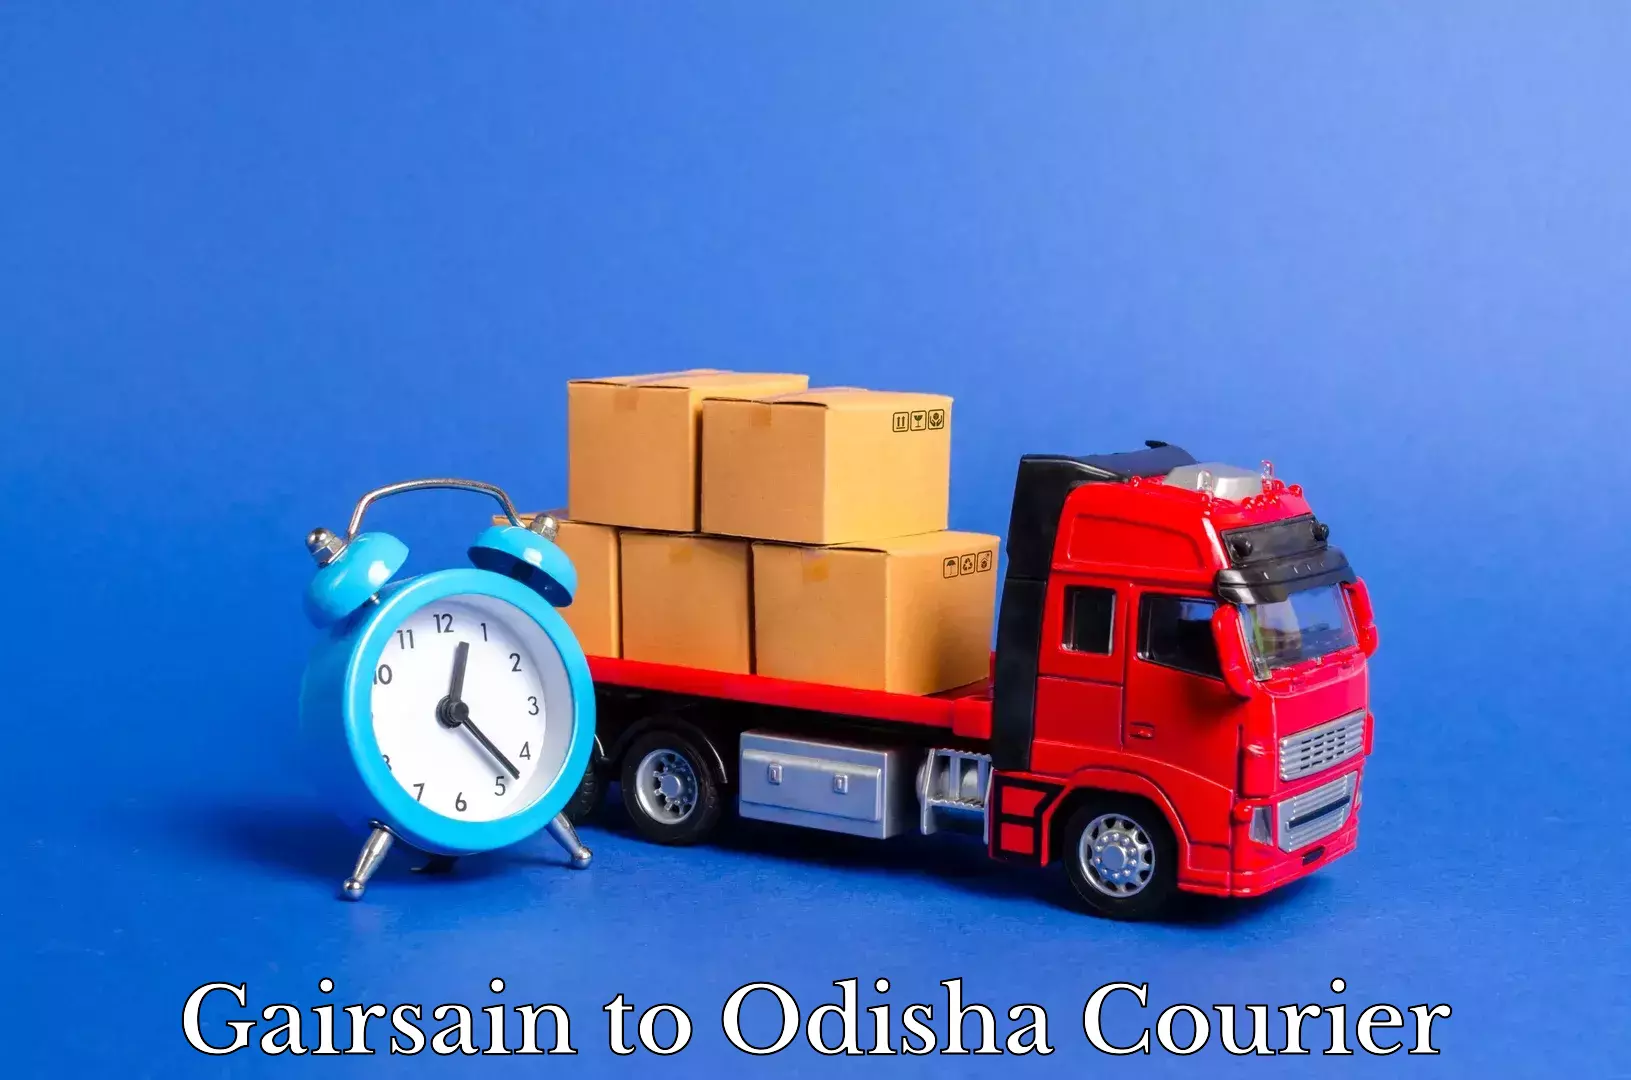 Residential furniture transport Gairsain to Loisingha